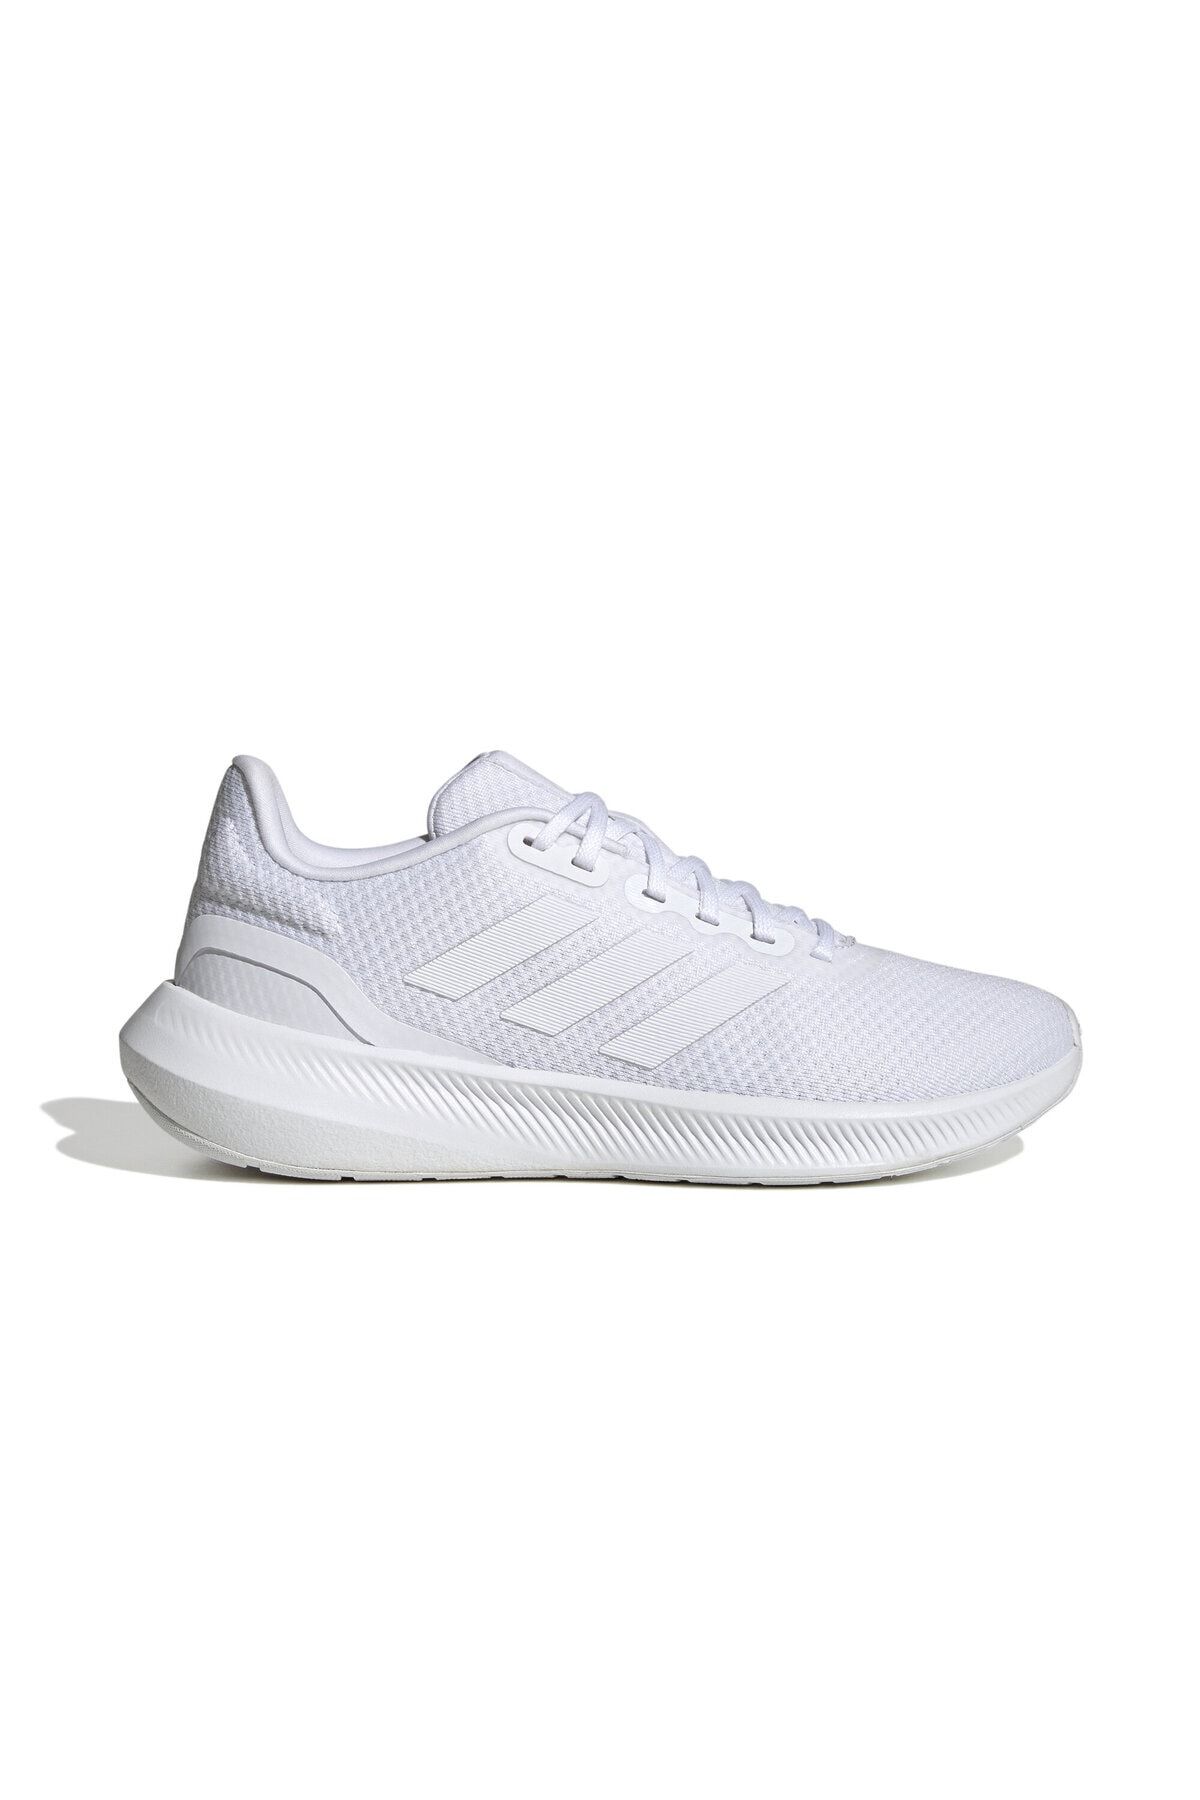 adidas Runfalcon 3.0 W Kadın Koşu Ayakkabısı HP7559 Beyaz